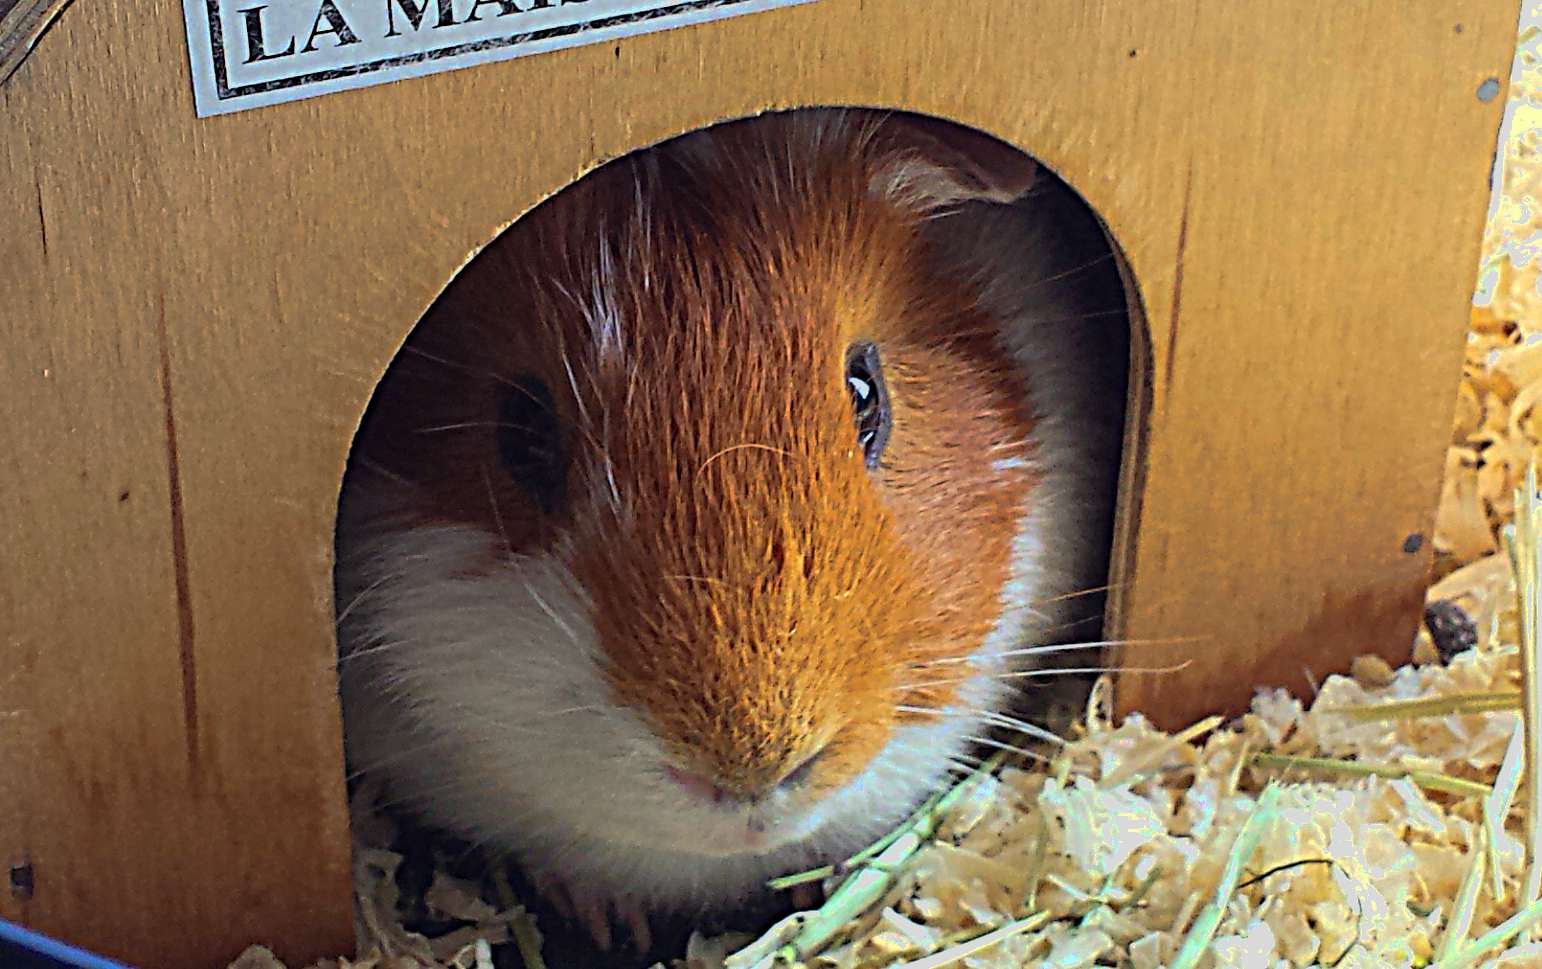 Guinea pig in a box